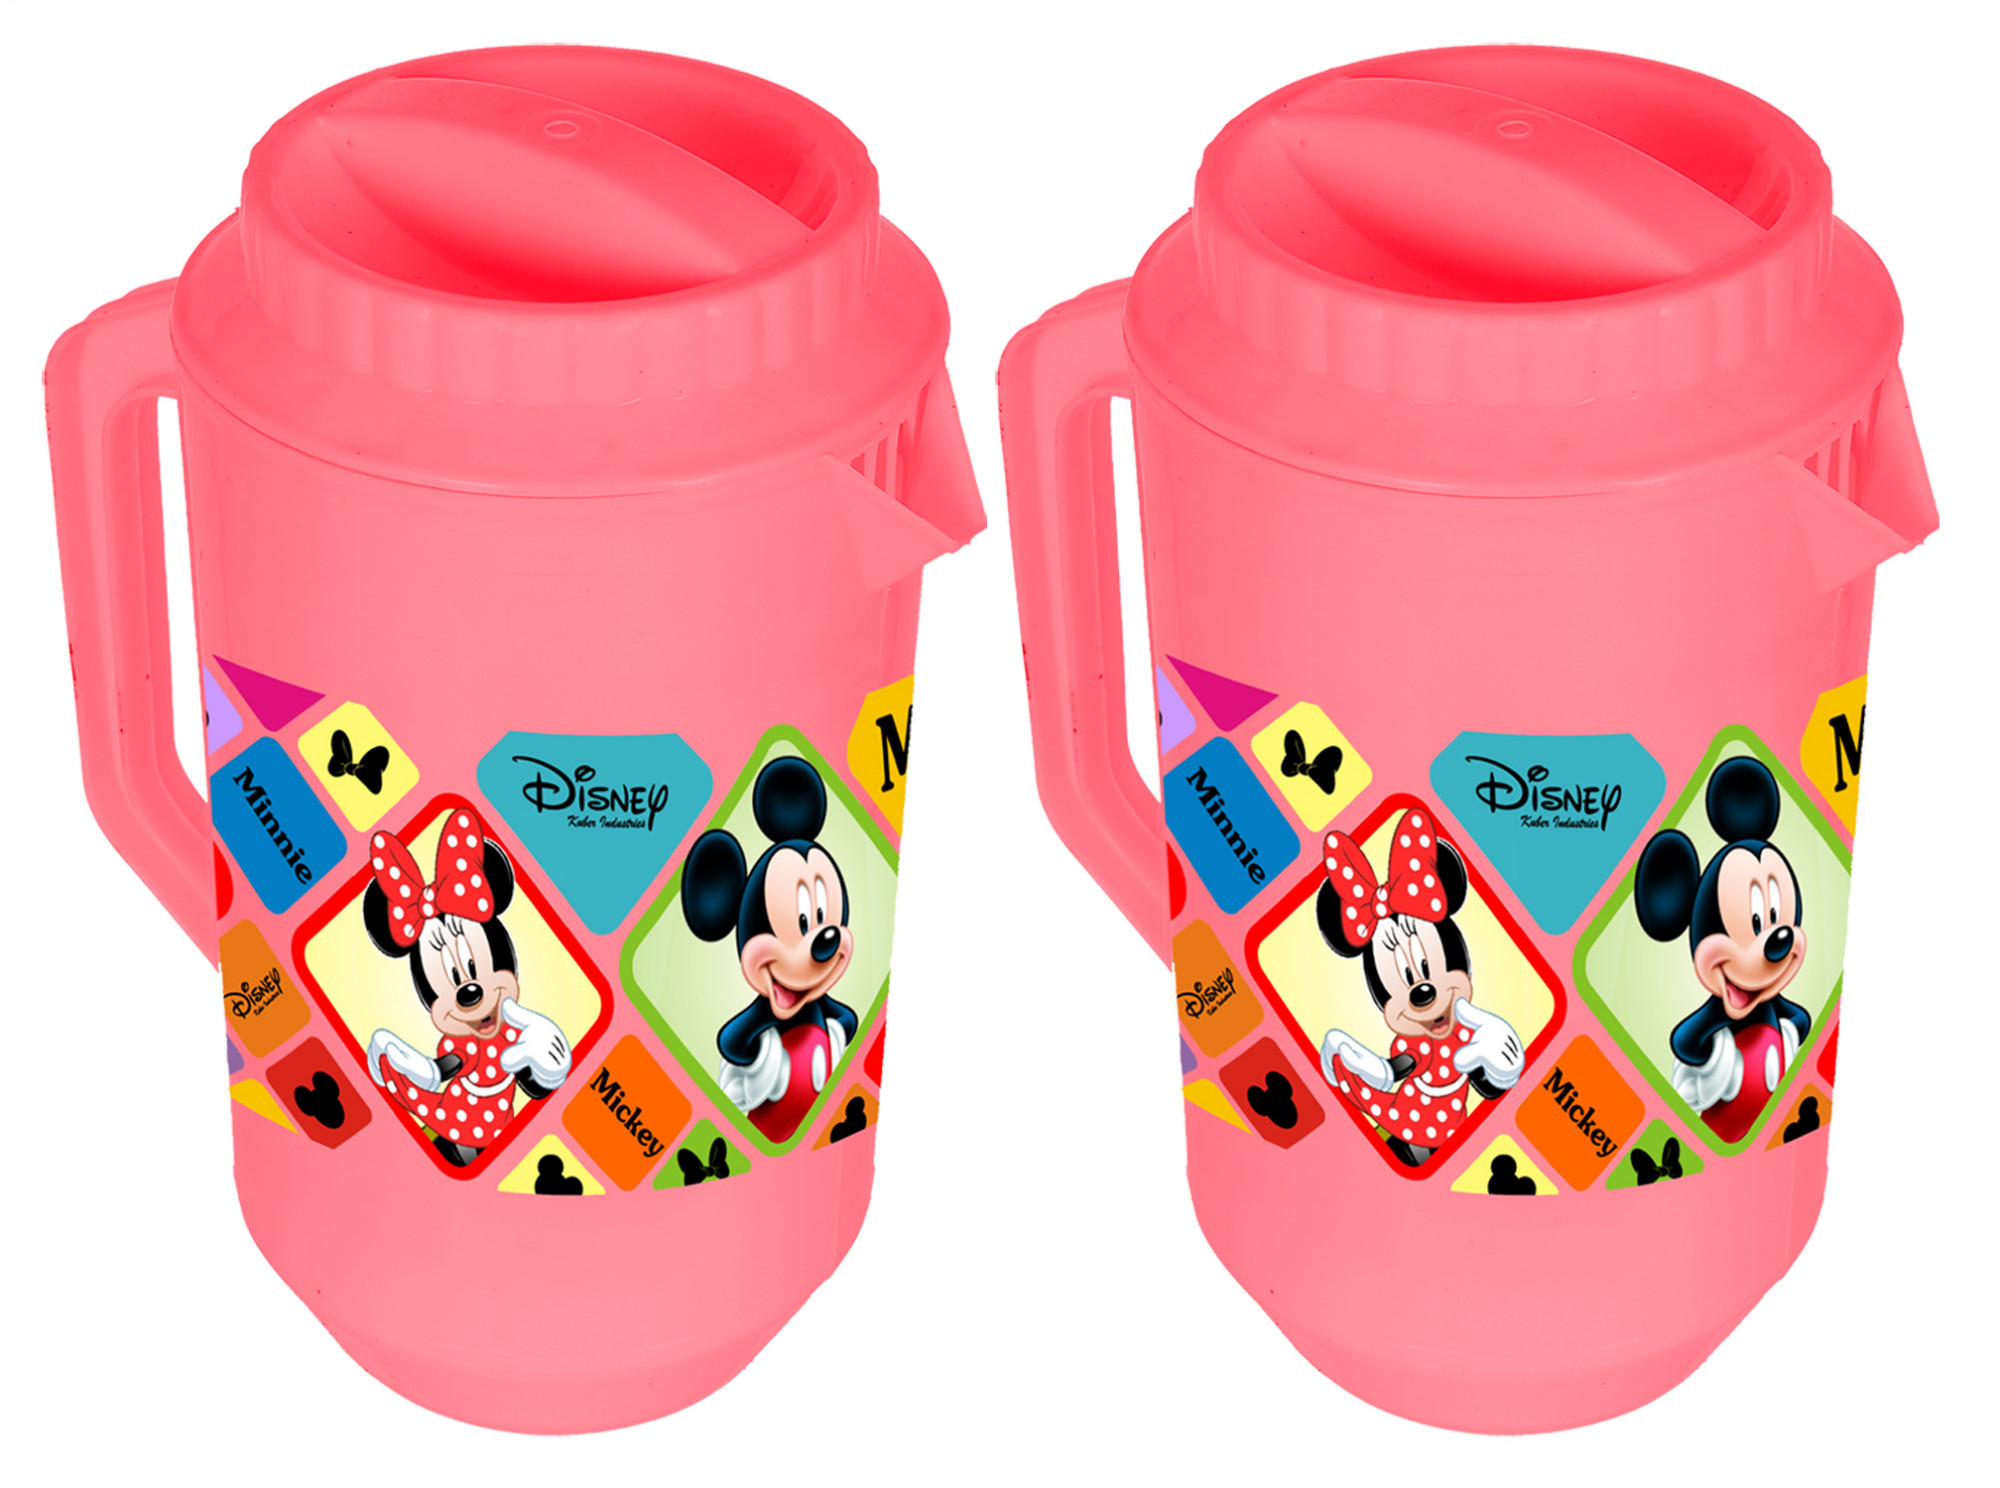 Kuber Industries Disney Mickey Minnie Print Unbreakable Multipurpose Plastic Water & Juice Jug With Lid,2 Ltr (Pink)